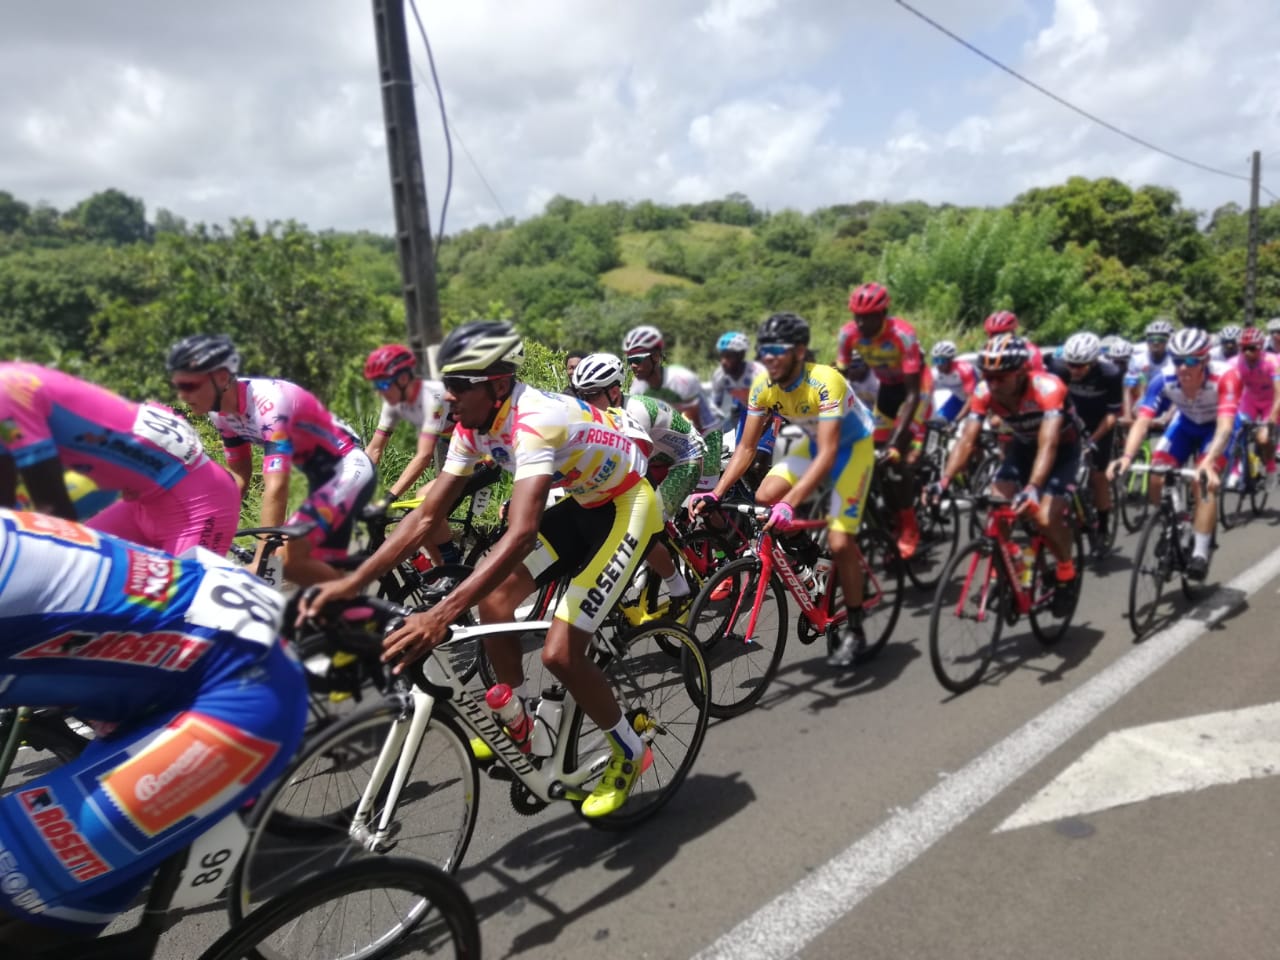     Tour cycliste de Martinique 2019 : des Trois-Îlets à Trinité en 102 kilomètres

